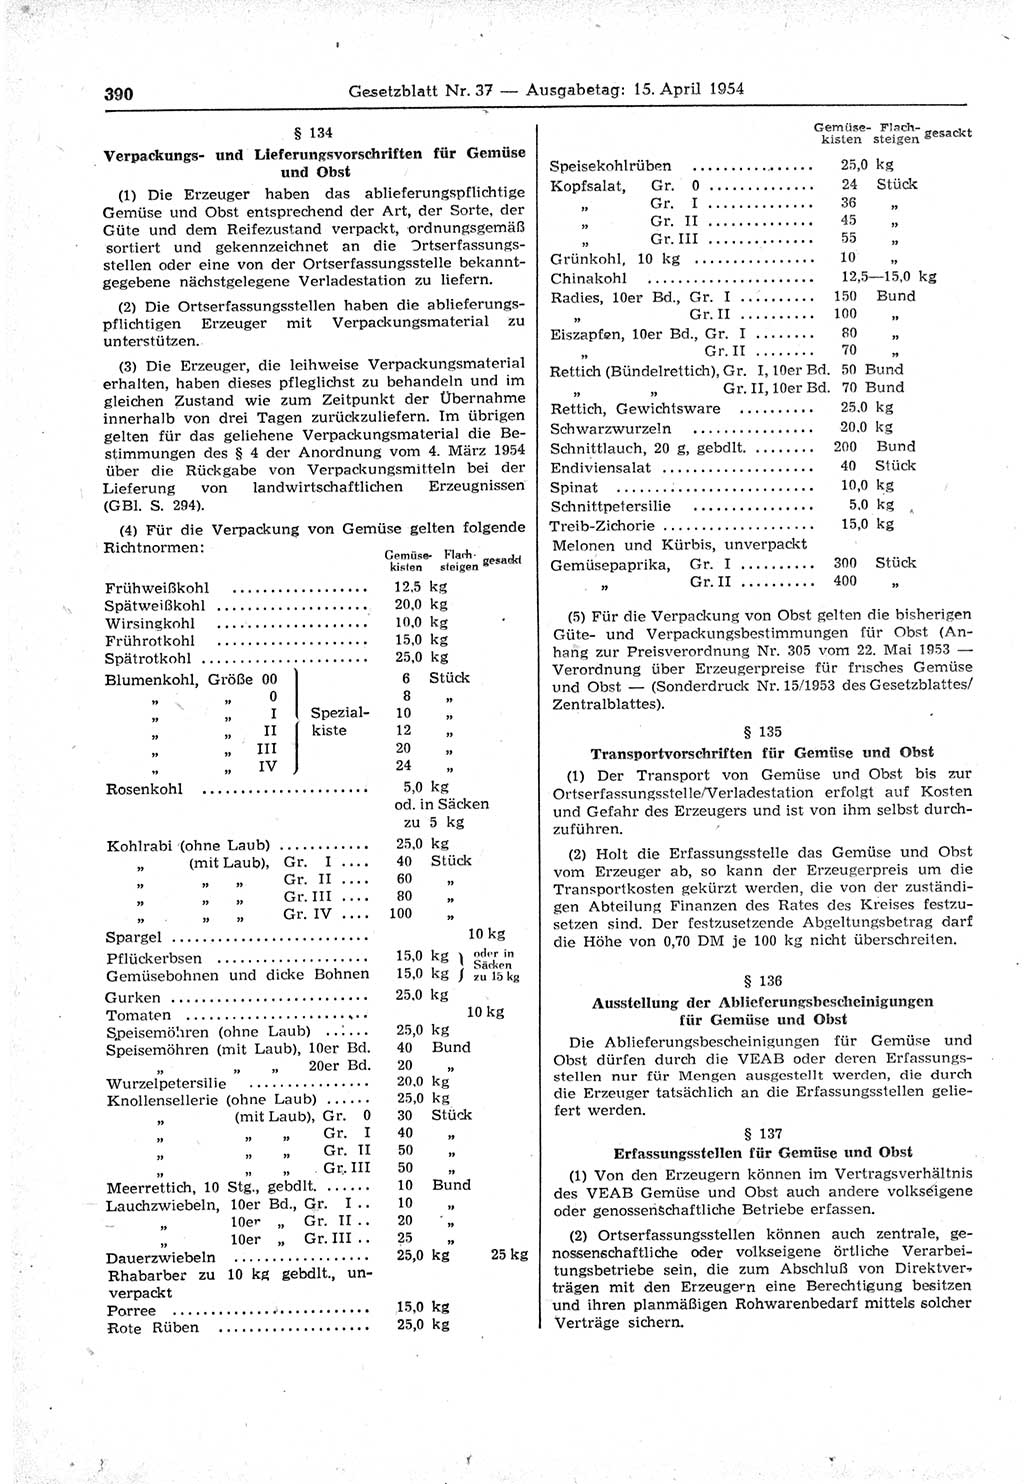 Gesetzblatt (GBl.) der Deutschen Demokratischen Republik (DDR) 1954, Seite 390 (GBl. DDR 1954, S. 390)